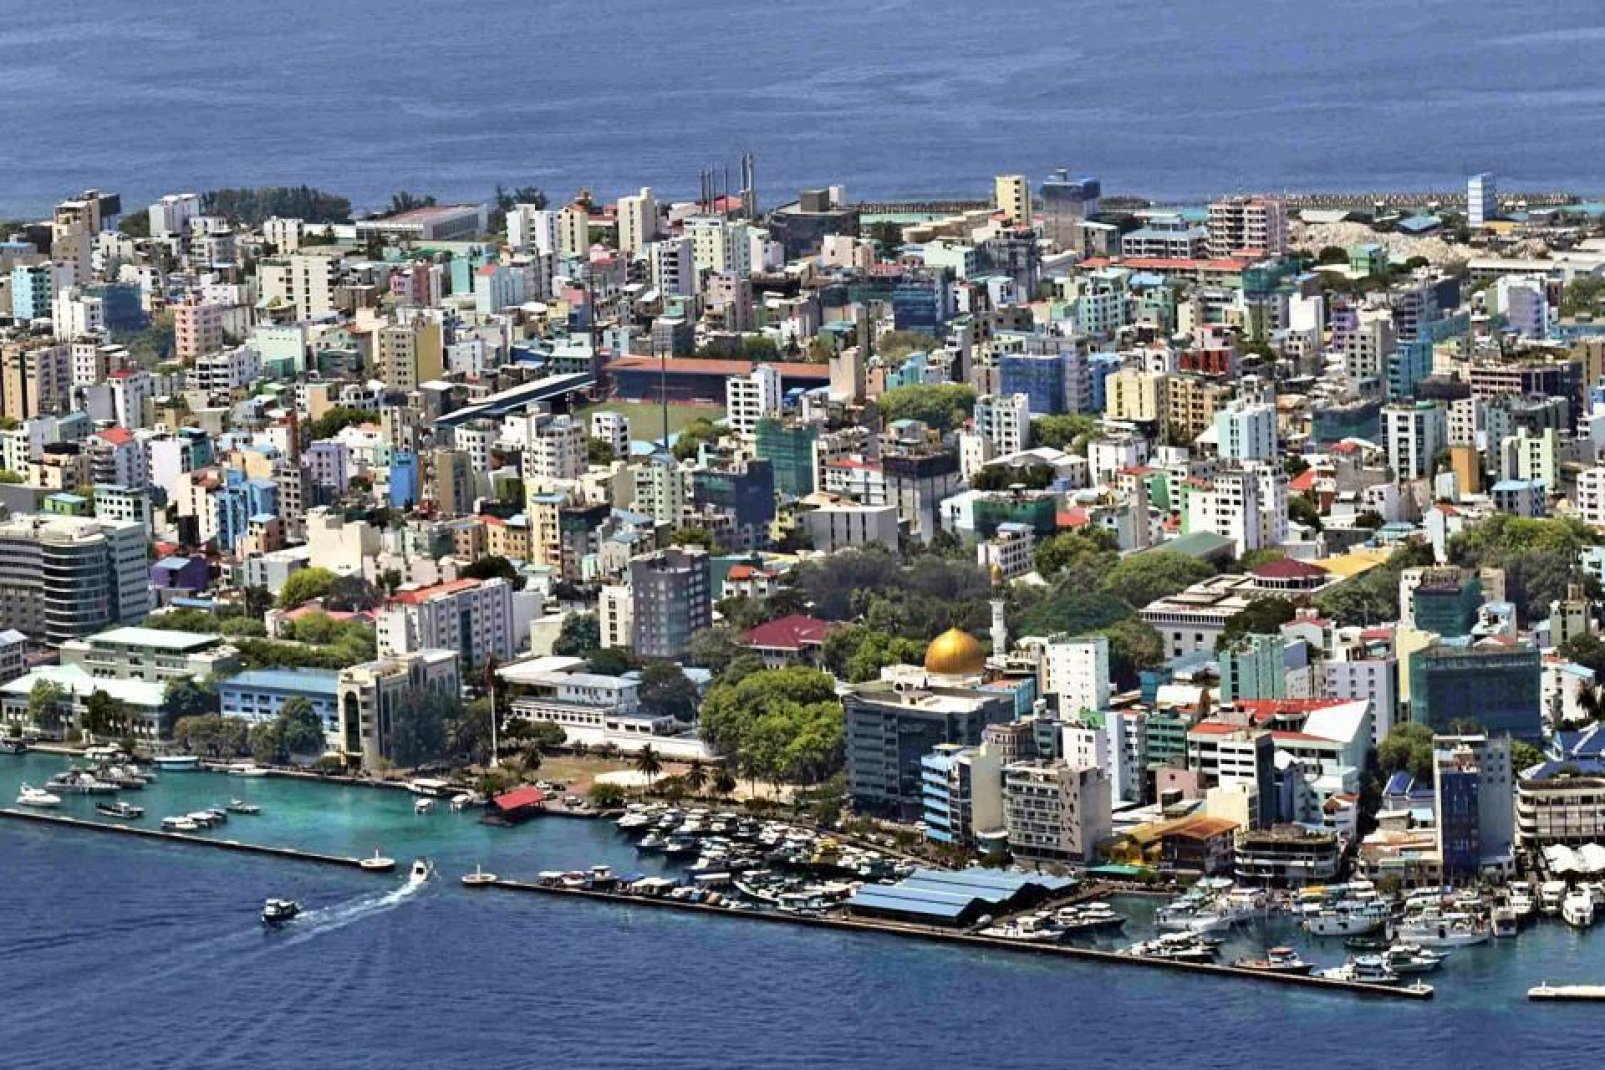 El islote de Malé está especialmente urbanizado y constituye la única ciudad importante del archipiélago.